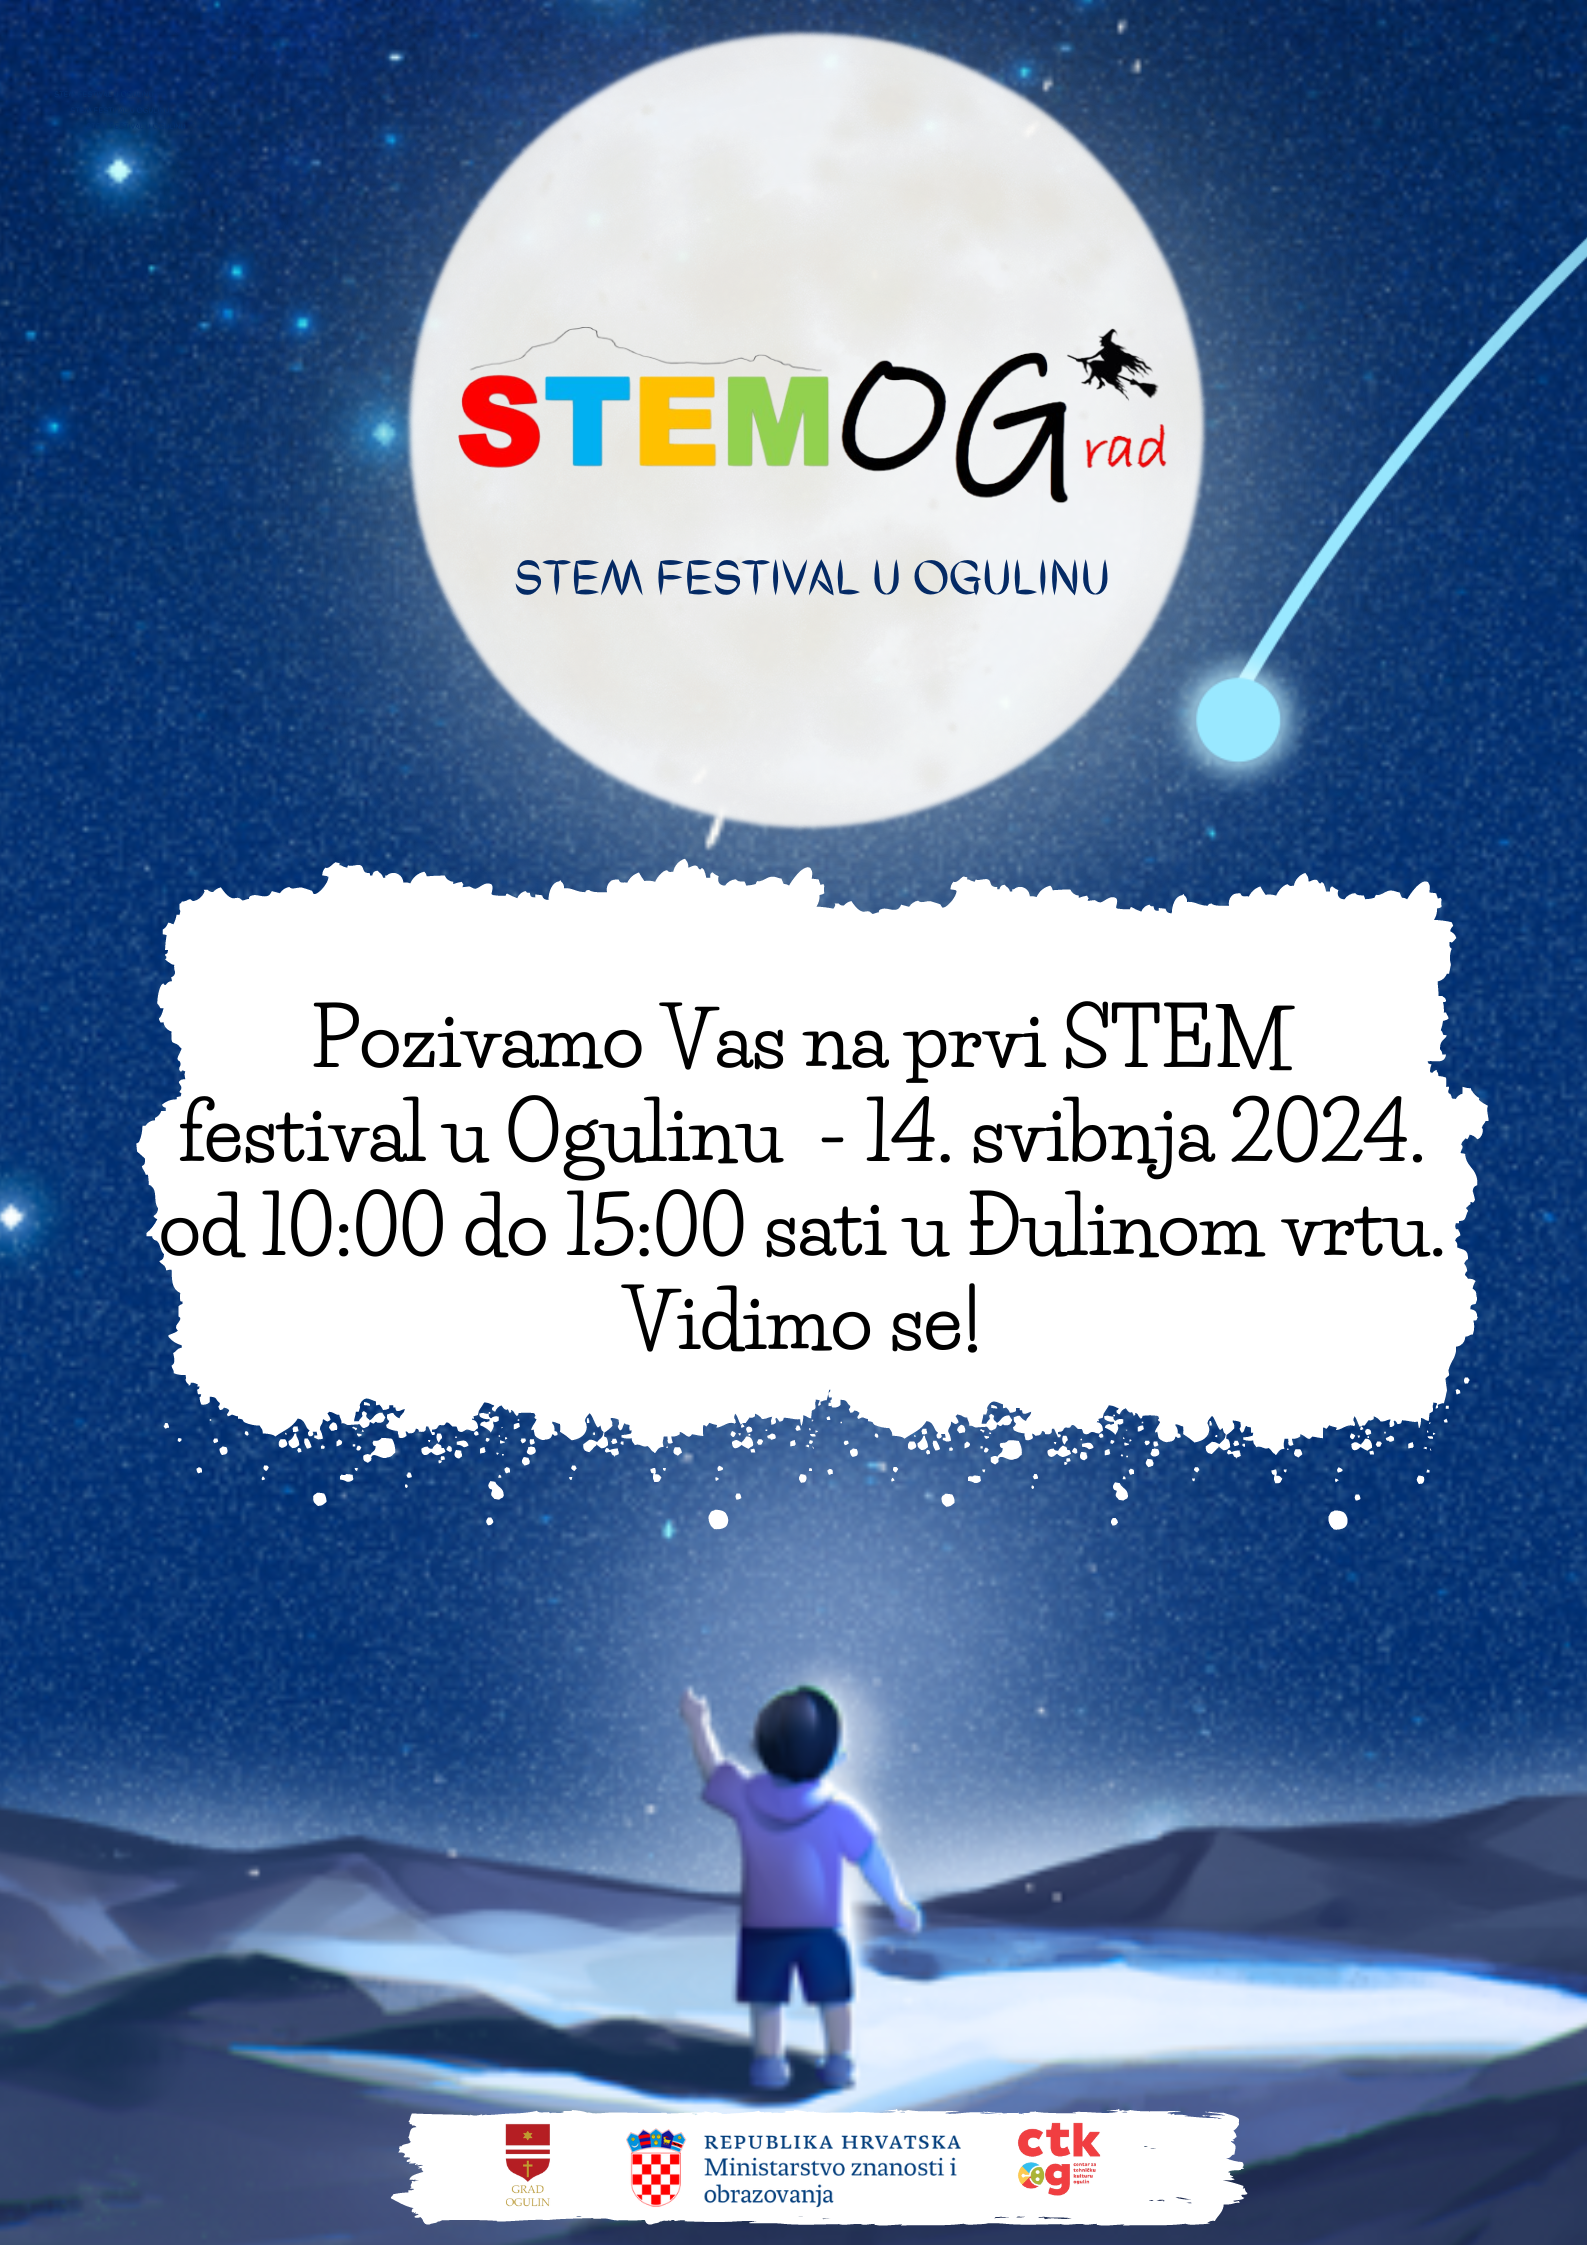 STEMOGRAD – Stem festival u Ogulinu